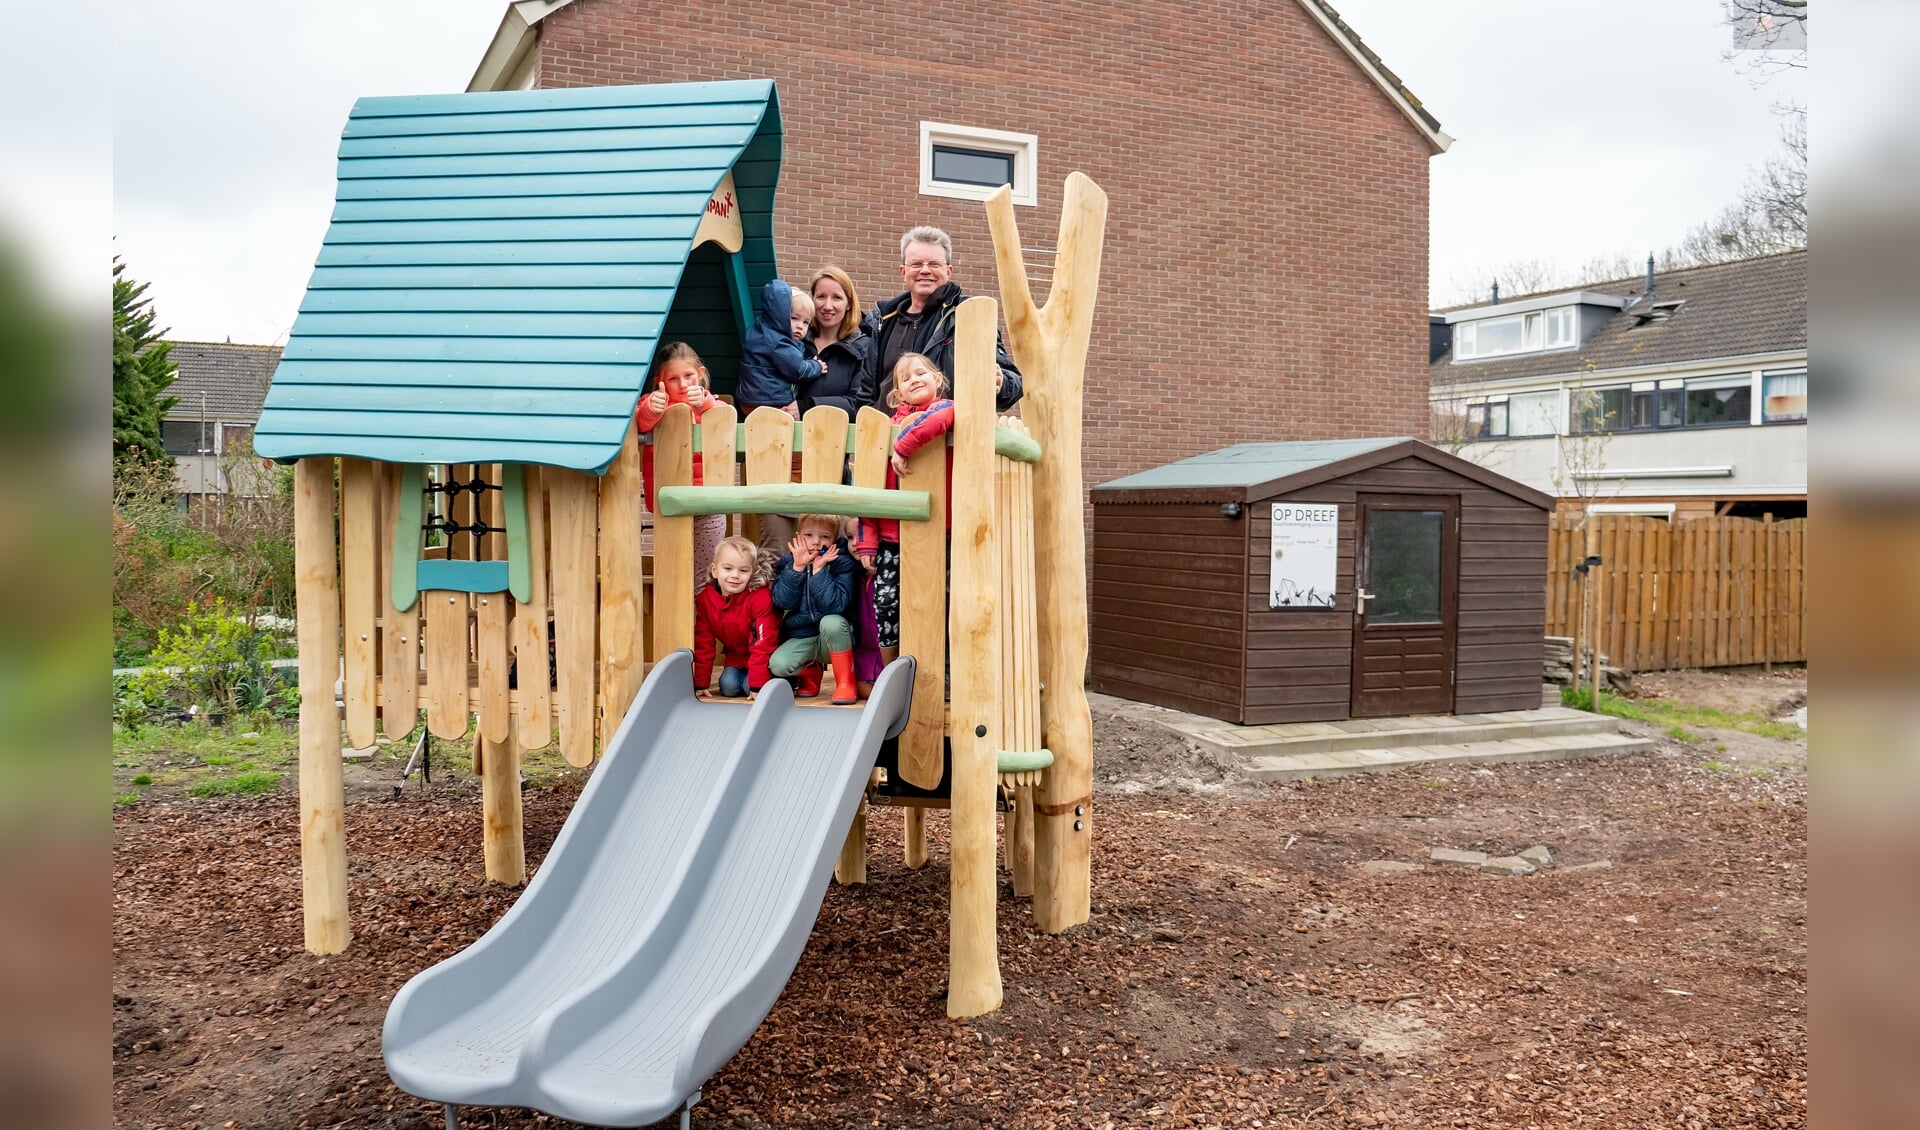 Bestuursleden Jeanine van Jaarsveld en Albert Verkuyl van buurtverenigingen Op Dreef met een aantal buurtkinderen op het nieuwe speelhuisje. | Foto: J.P. Kranenburg   